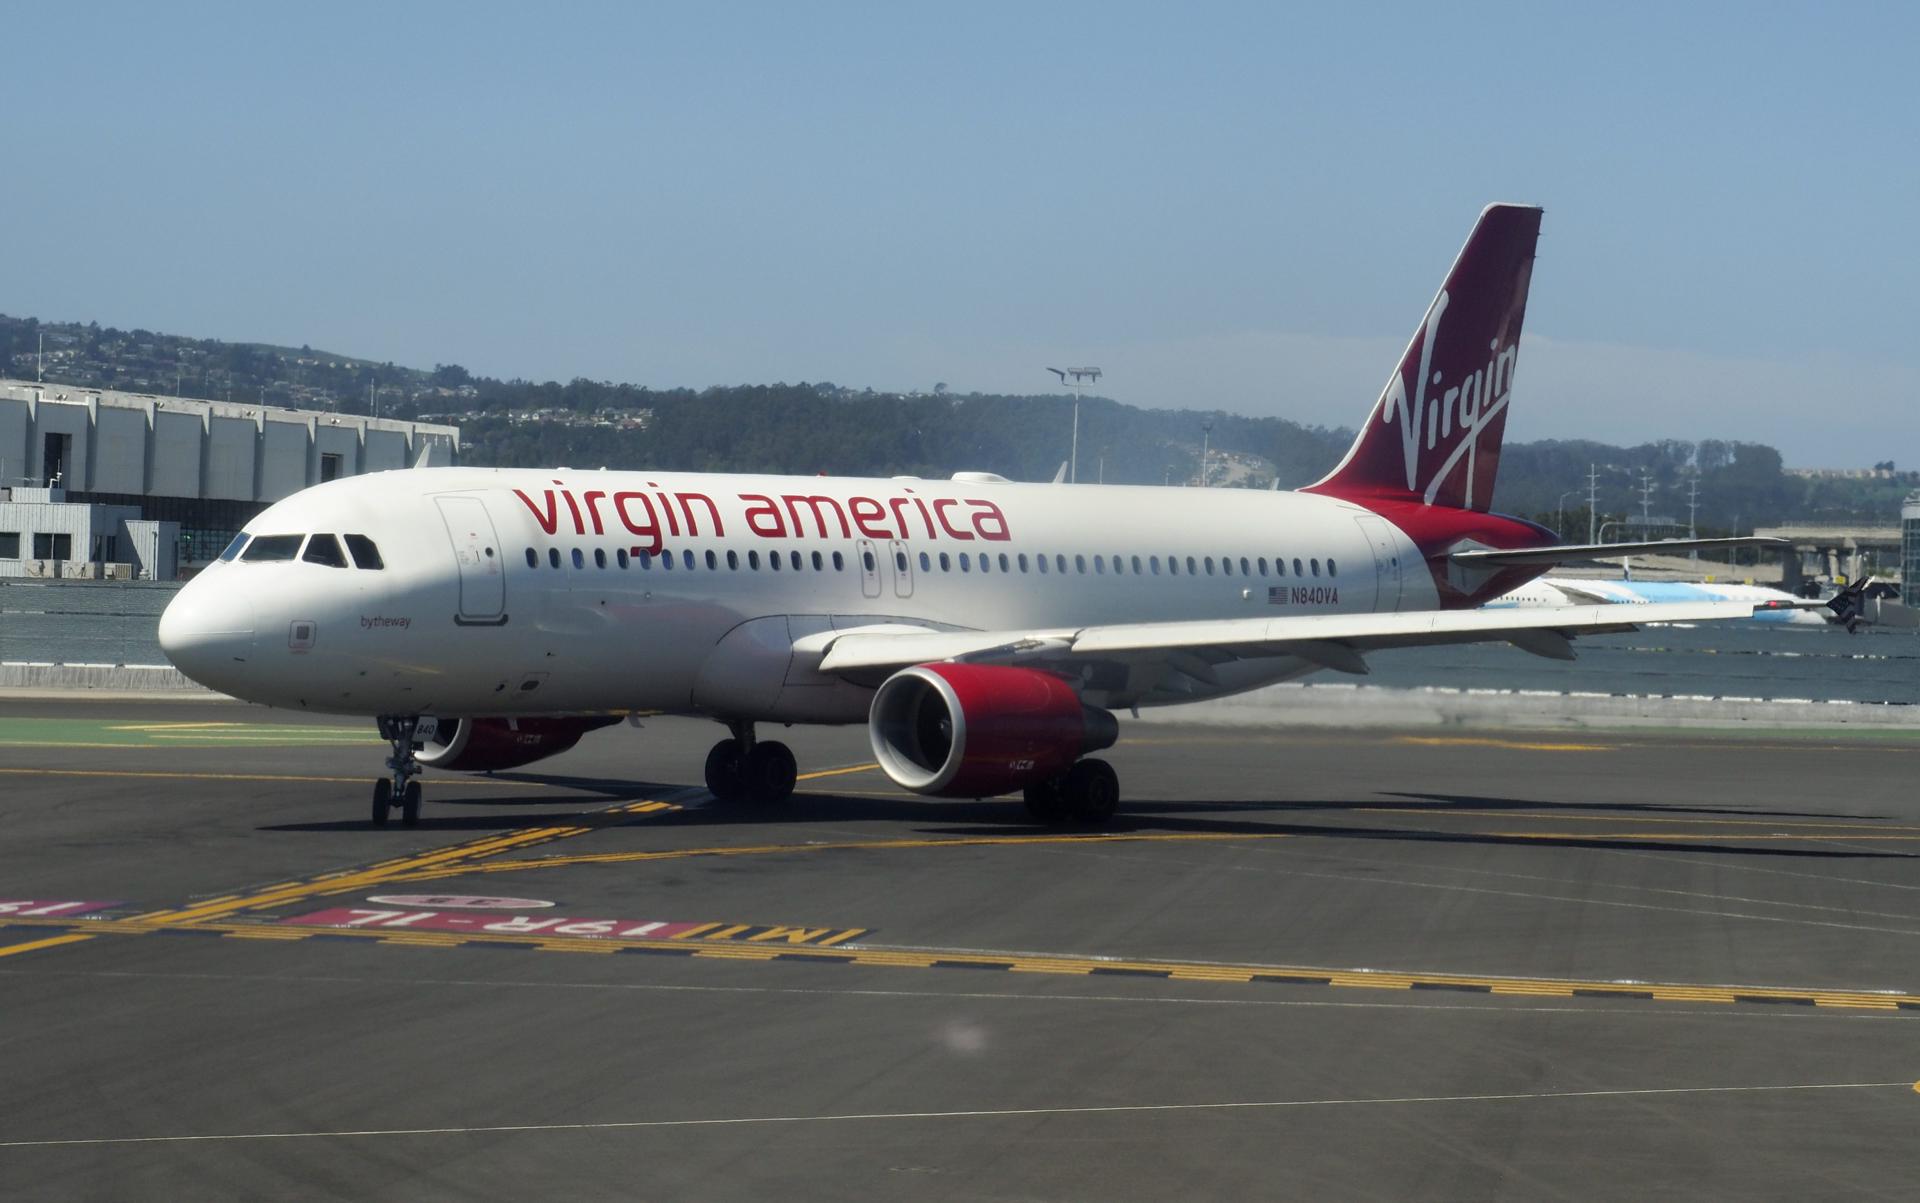 Un avión de pasajeros de la aerolínea Virgin America. Foto: fuente externa.